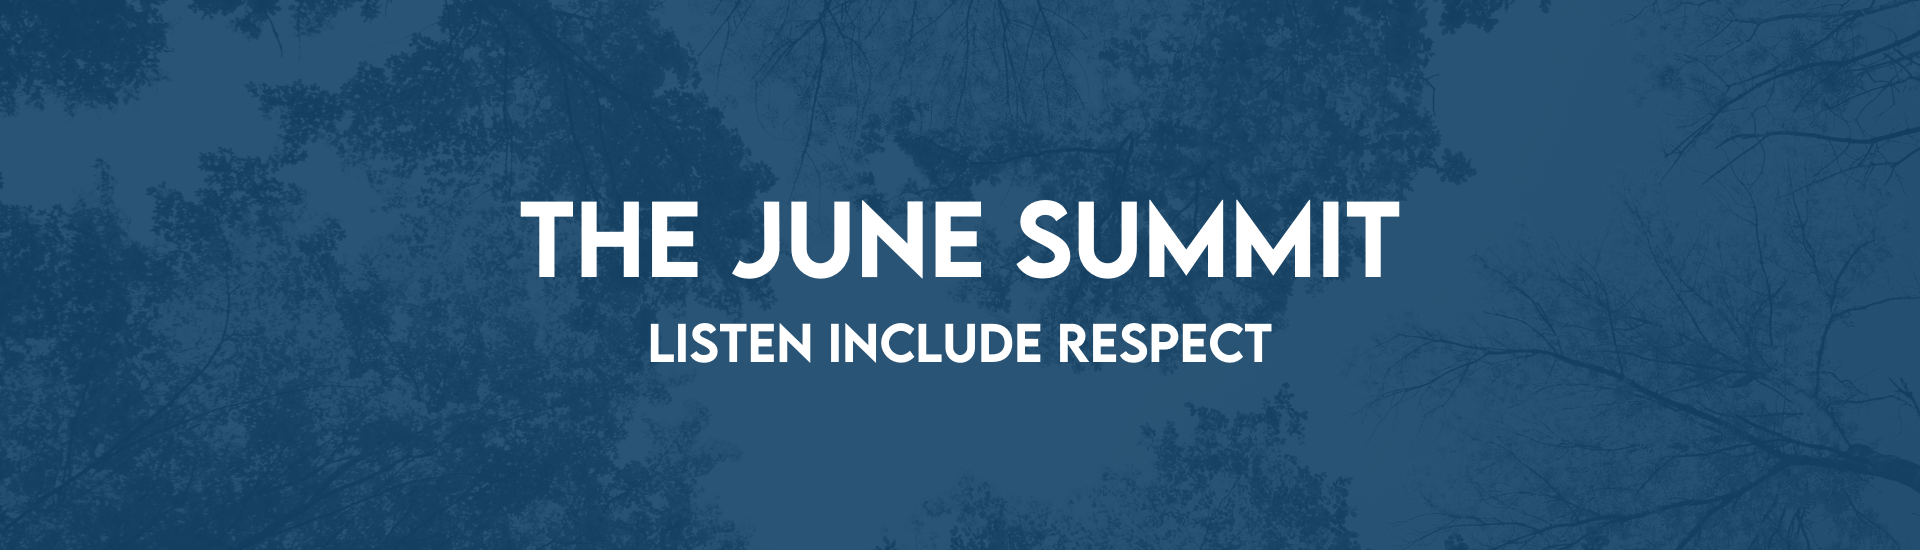 June Summit web banner (1) (1)